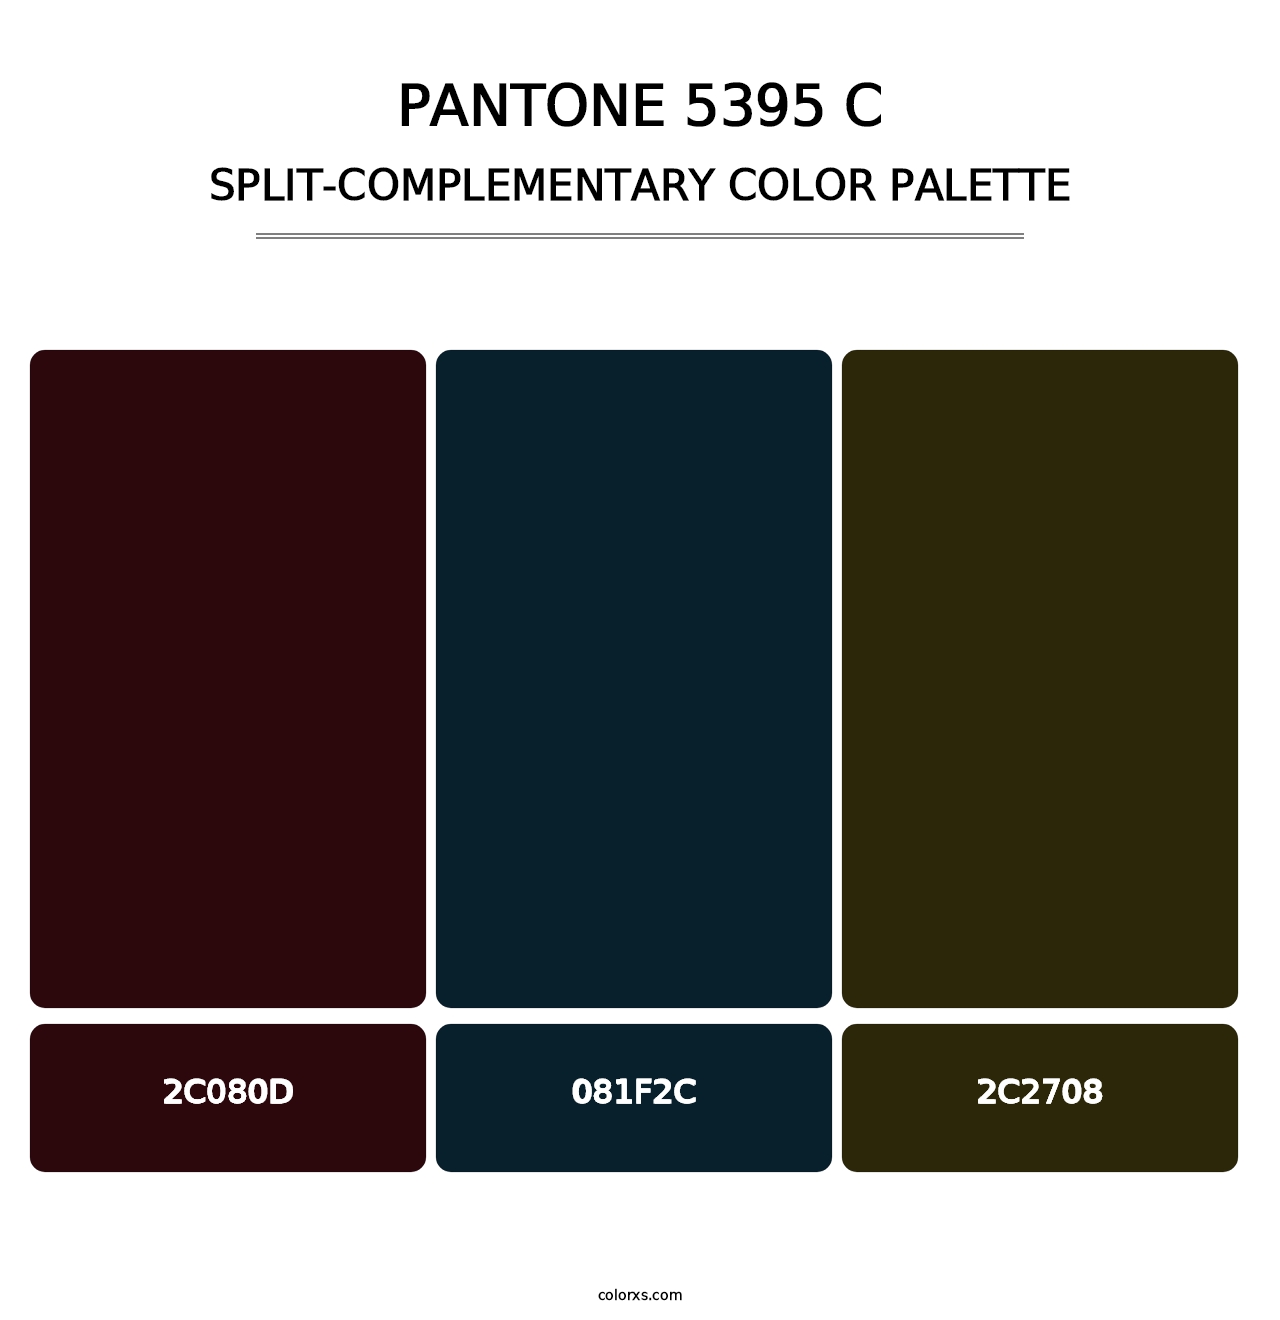 PANTONE 5395 C - Split-Complementary Color Palette